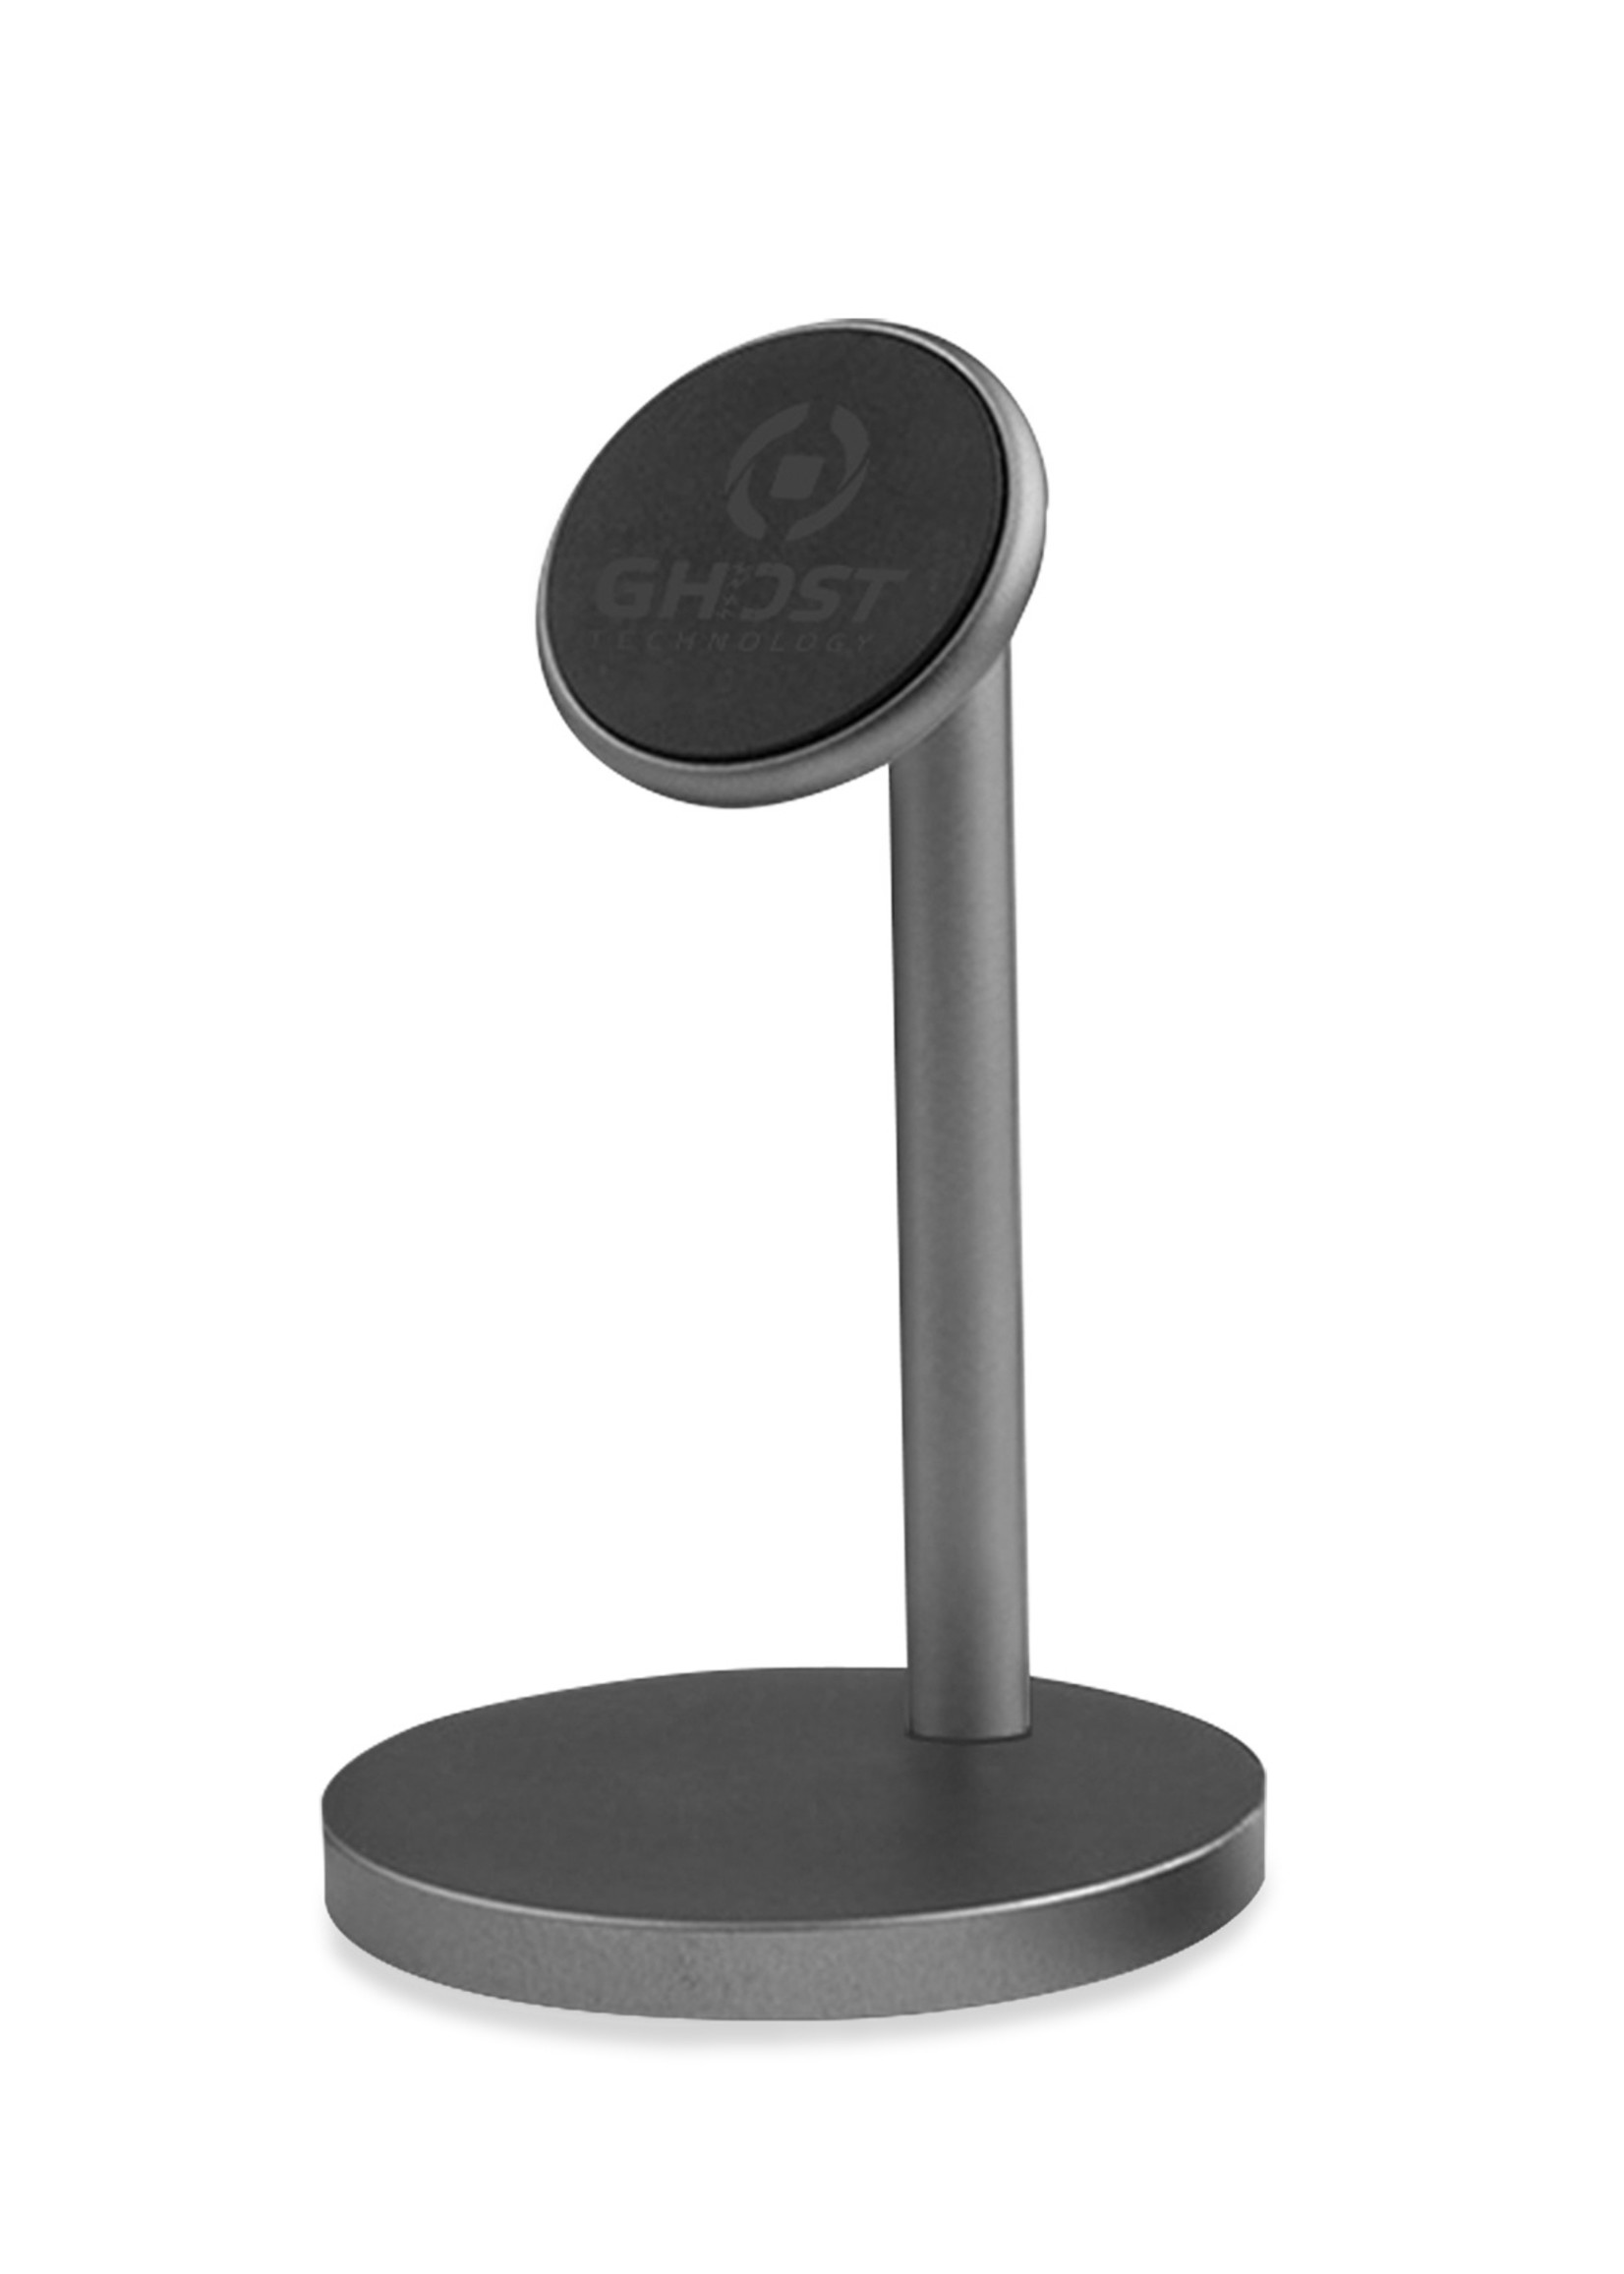 Celly GHOSTDESK - Universal magnetic desk holder